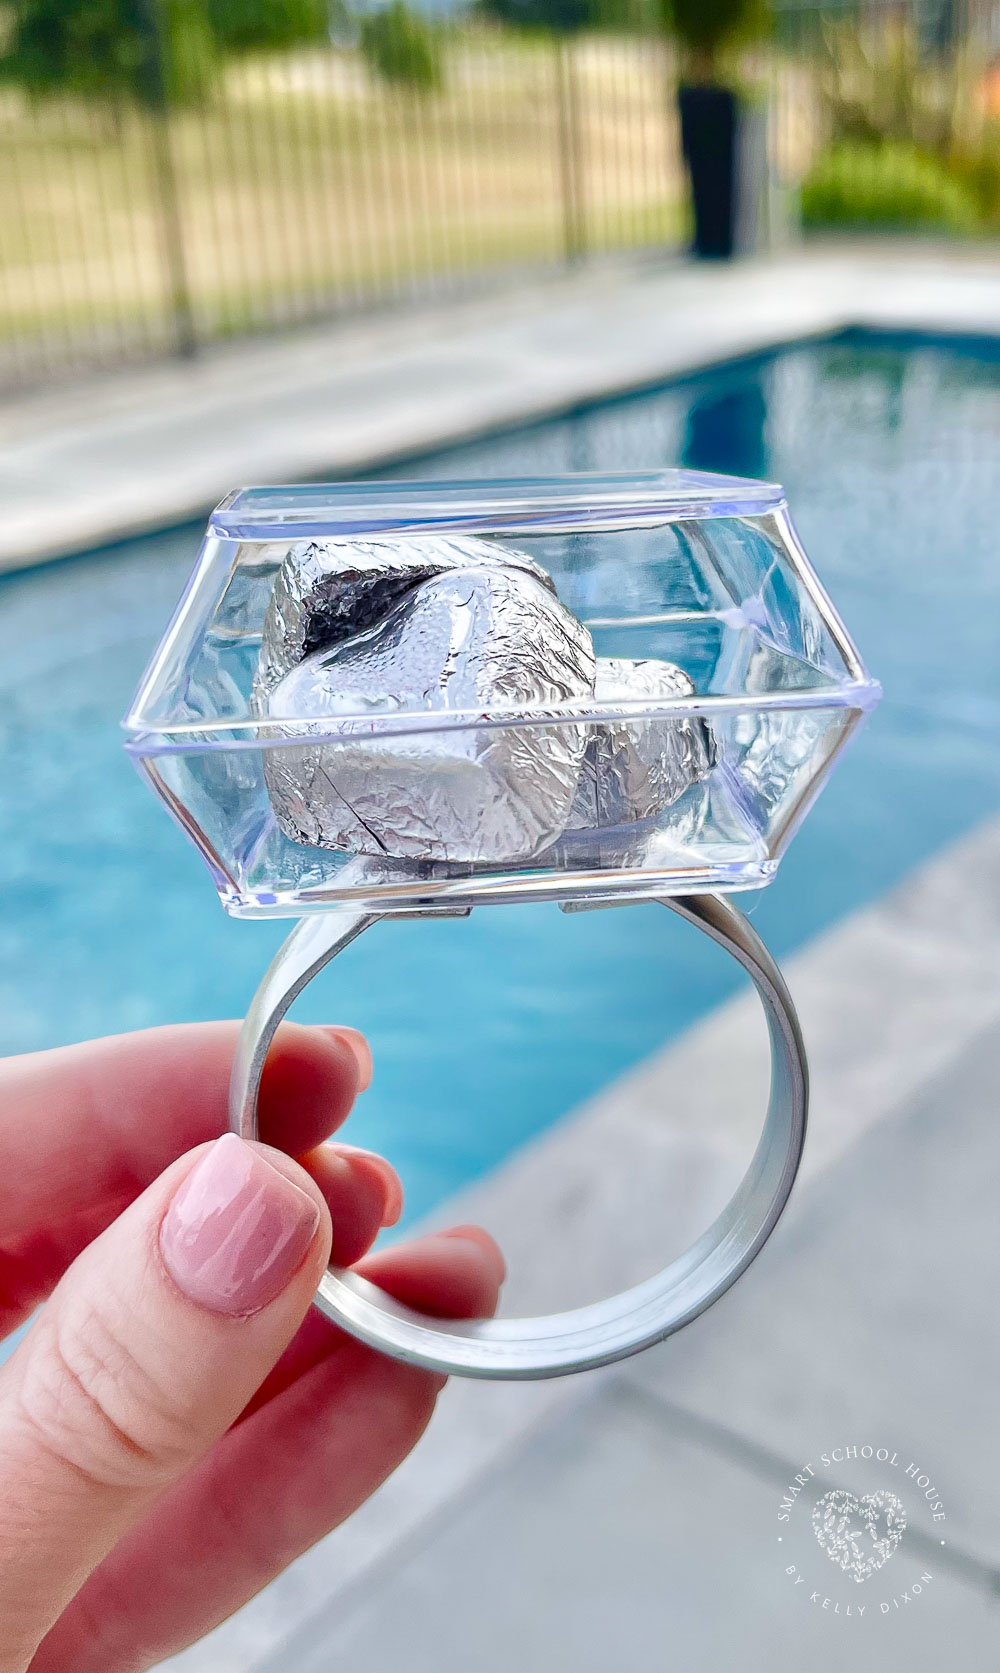 Tento valentínsky prsteň naozaj prináša radosť!  Tento veľký a rozkošný prsteň v tvare diamantu je vyrobený z plastu a naplnený čokoládami v tvare srdca.